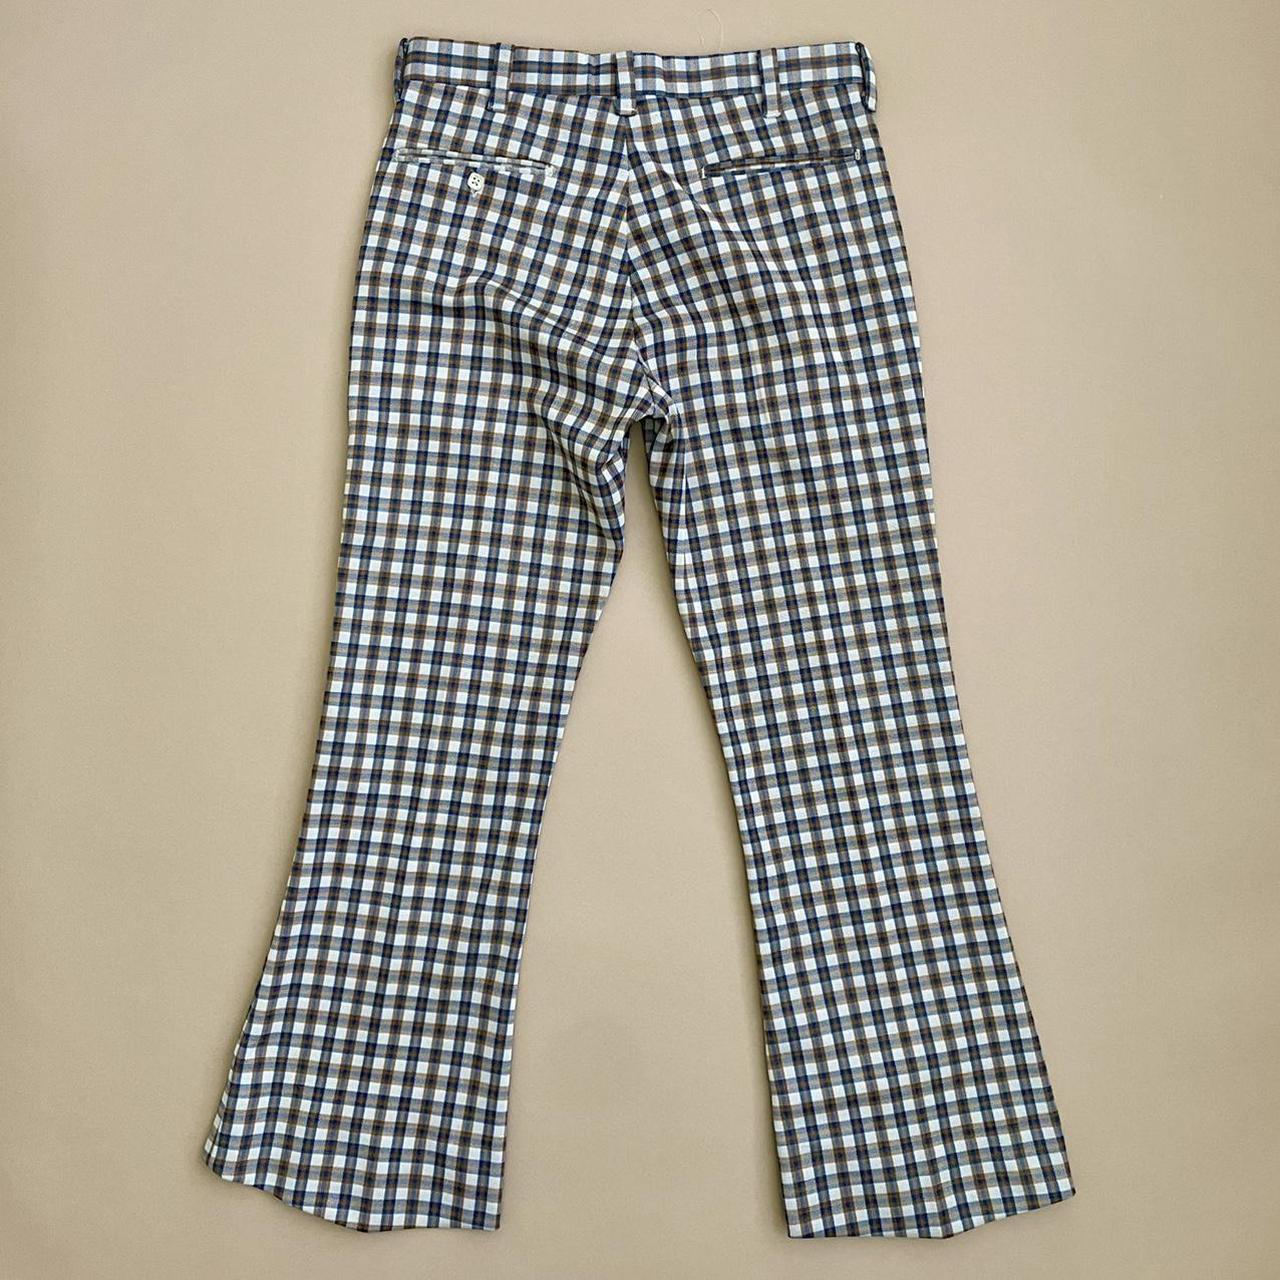 70s vintage Farah plaid trousers pants, no size tag - Depop